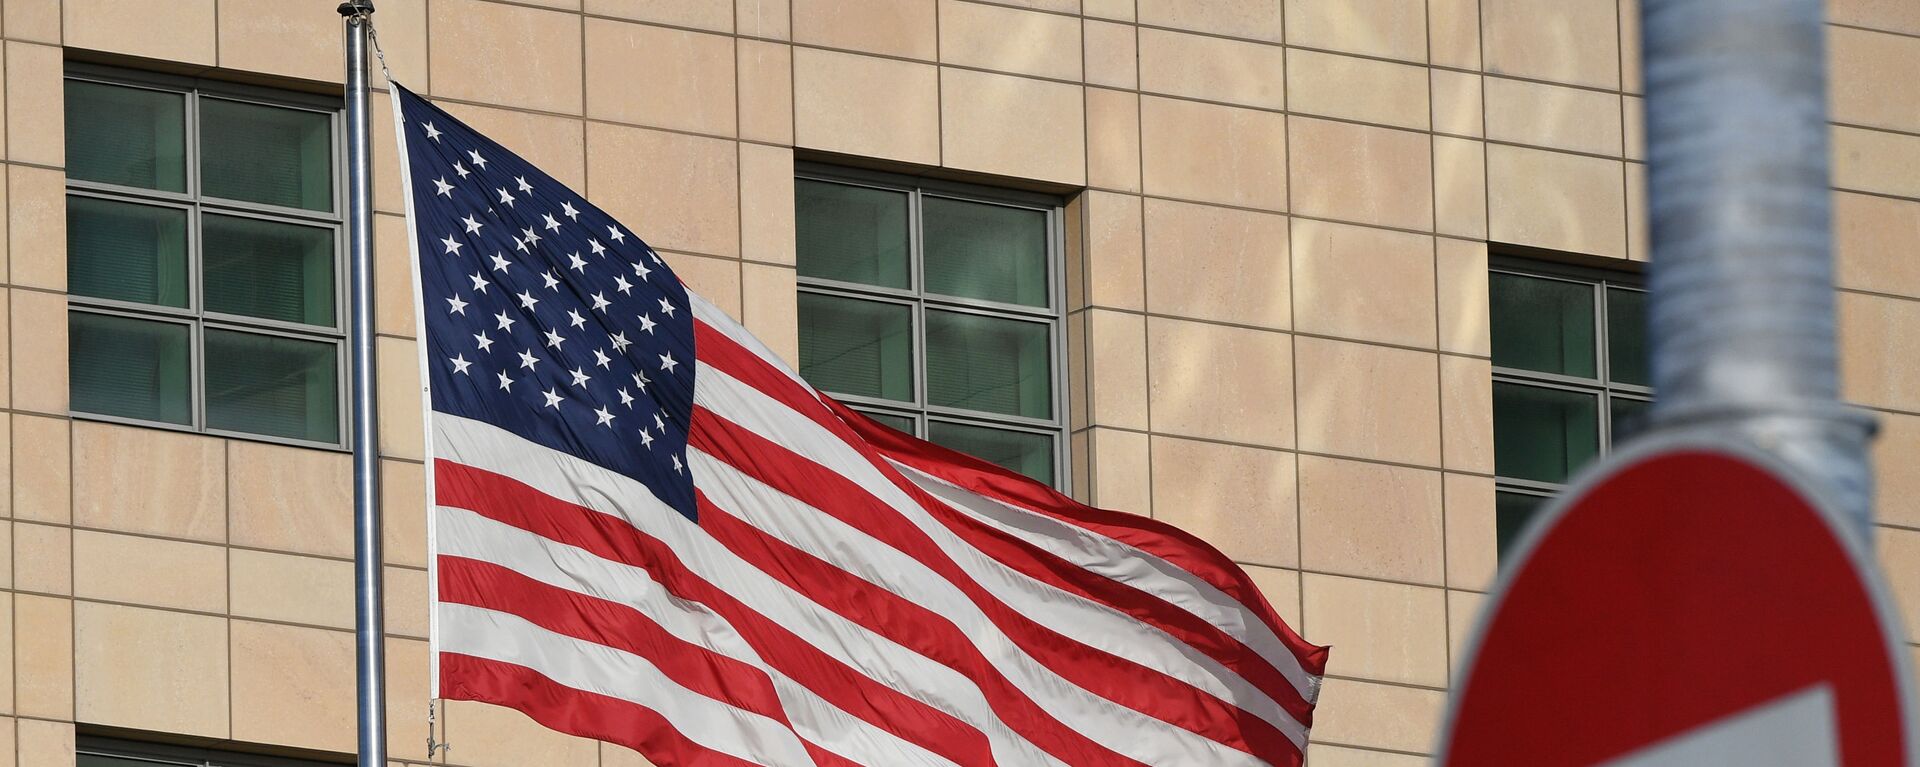 Государственный флаг США у американского посольства в Москве - Sputnik Lietuva, 1920, 30.04.2021